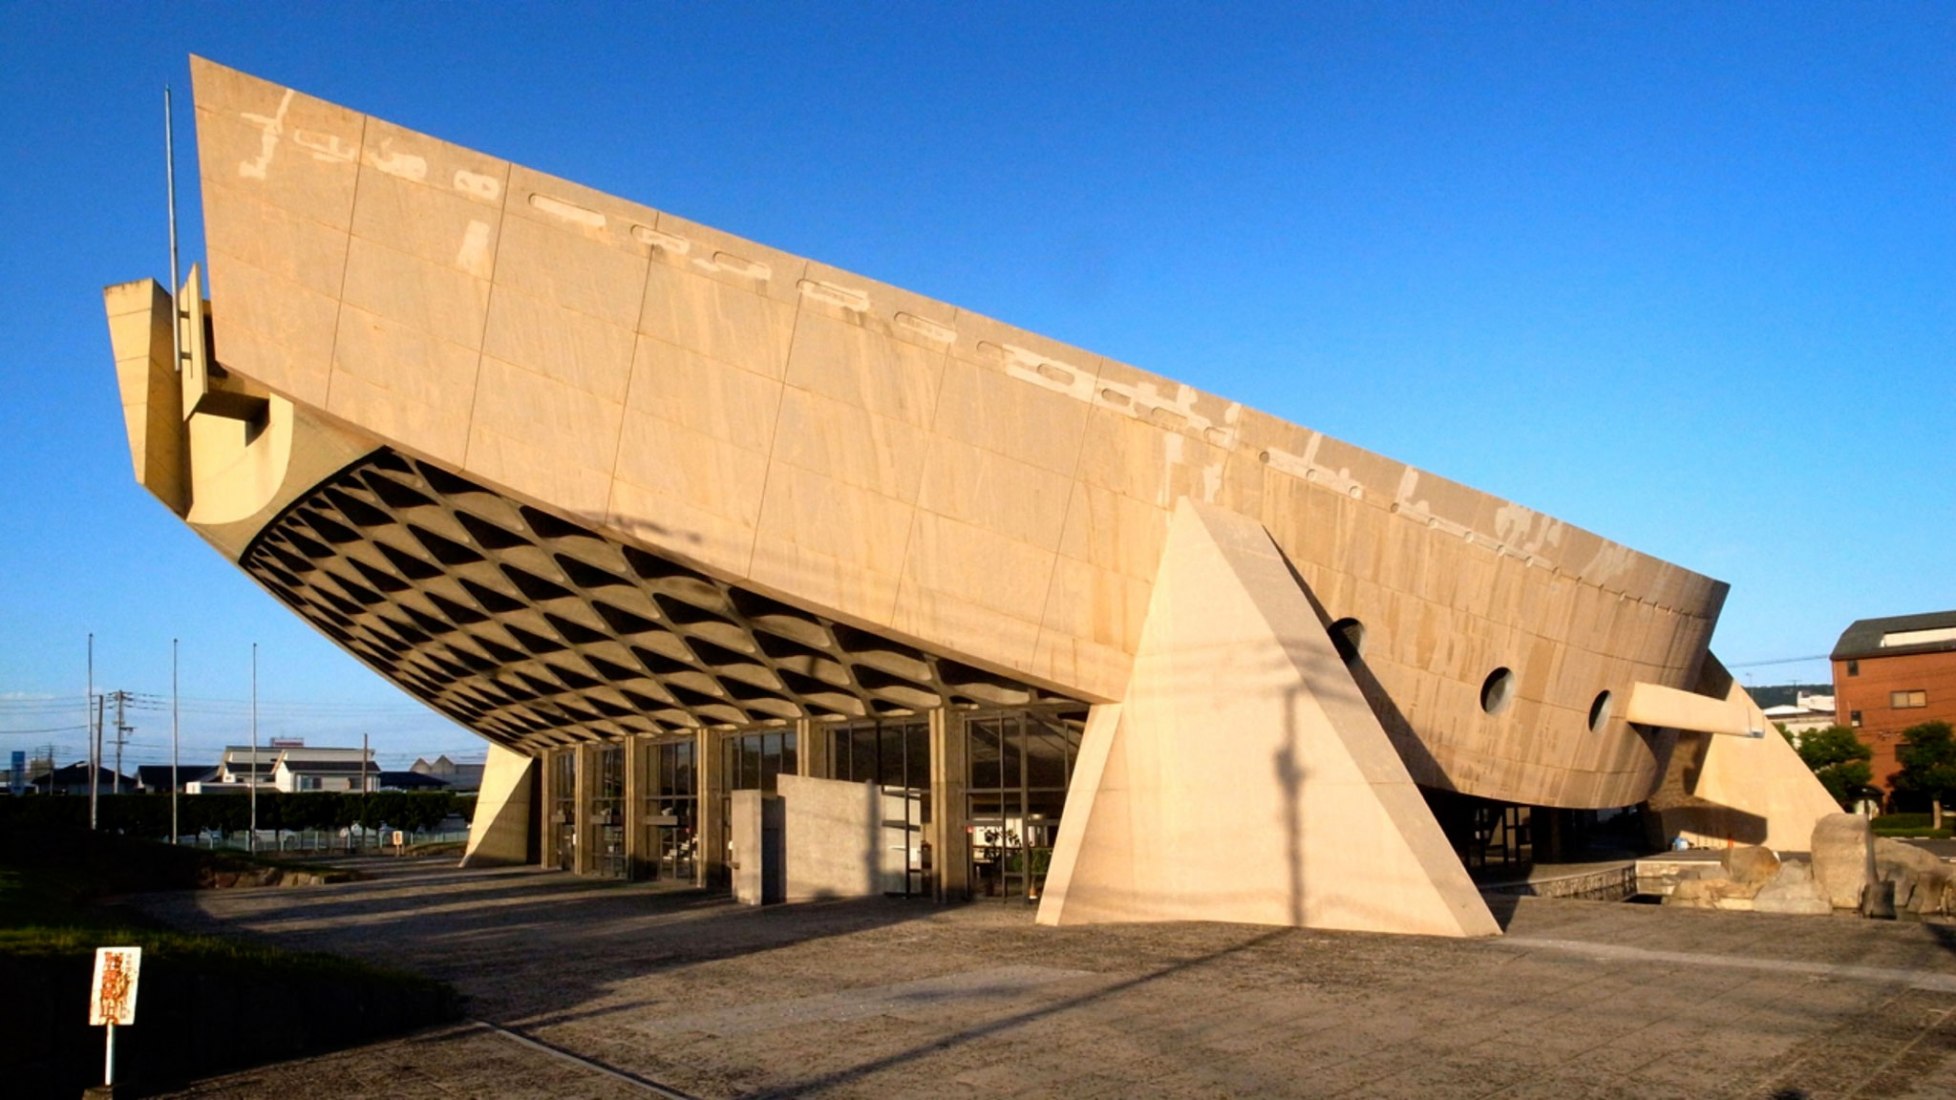 Japón, Gimnasio de la Prefectura de Kagawa de Kenzo Tange. El Gimnasio de la Prefectura de Kagawa, visto desde el sudoeste, fue diseñado para evocar la forma de una barcaza de madera japonesa tradicional, 2014. Fotografía de Noriyuki Kawanishi, cortesía de World Monuments Fund